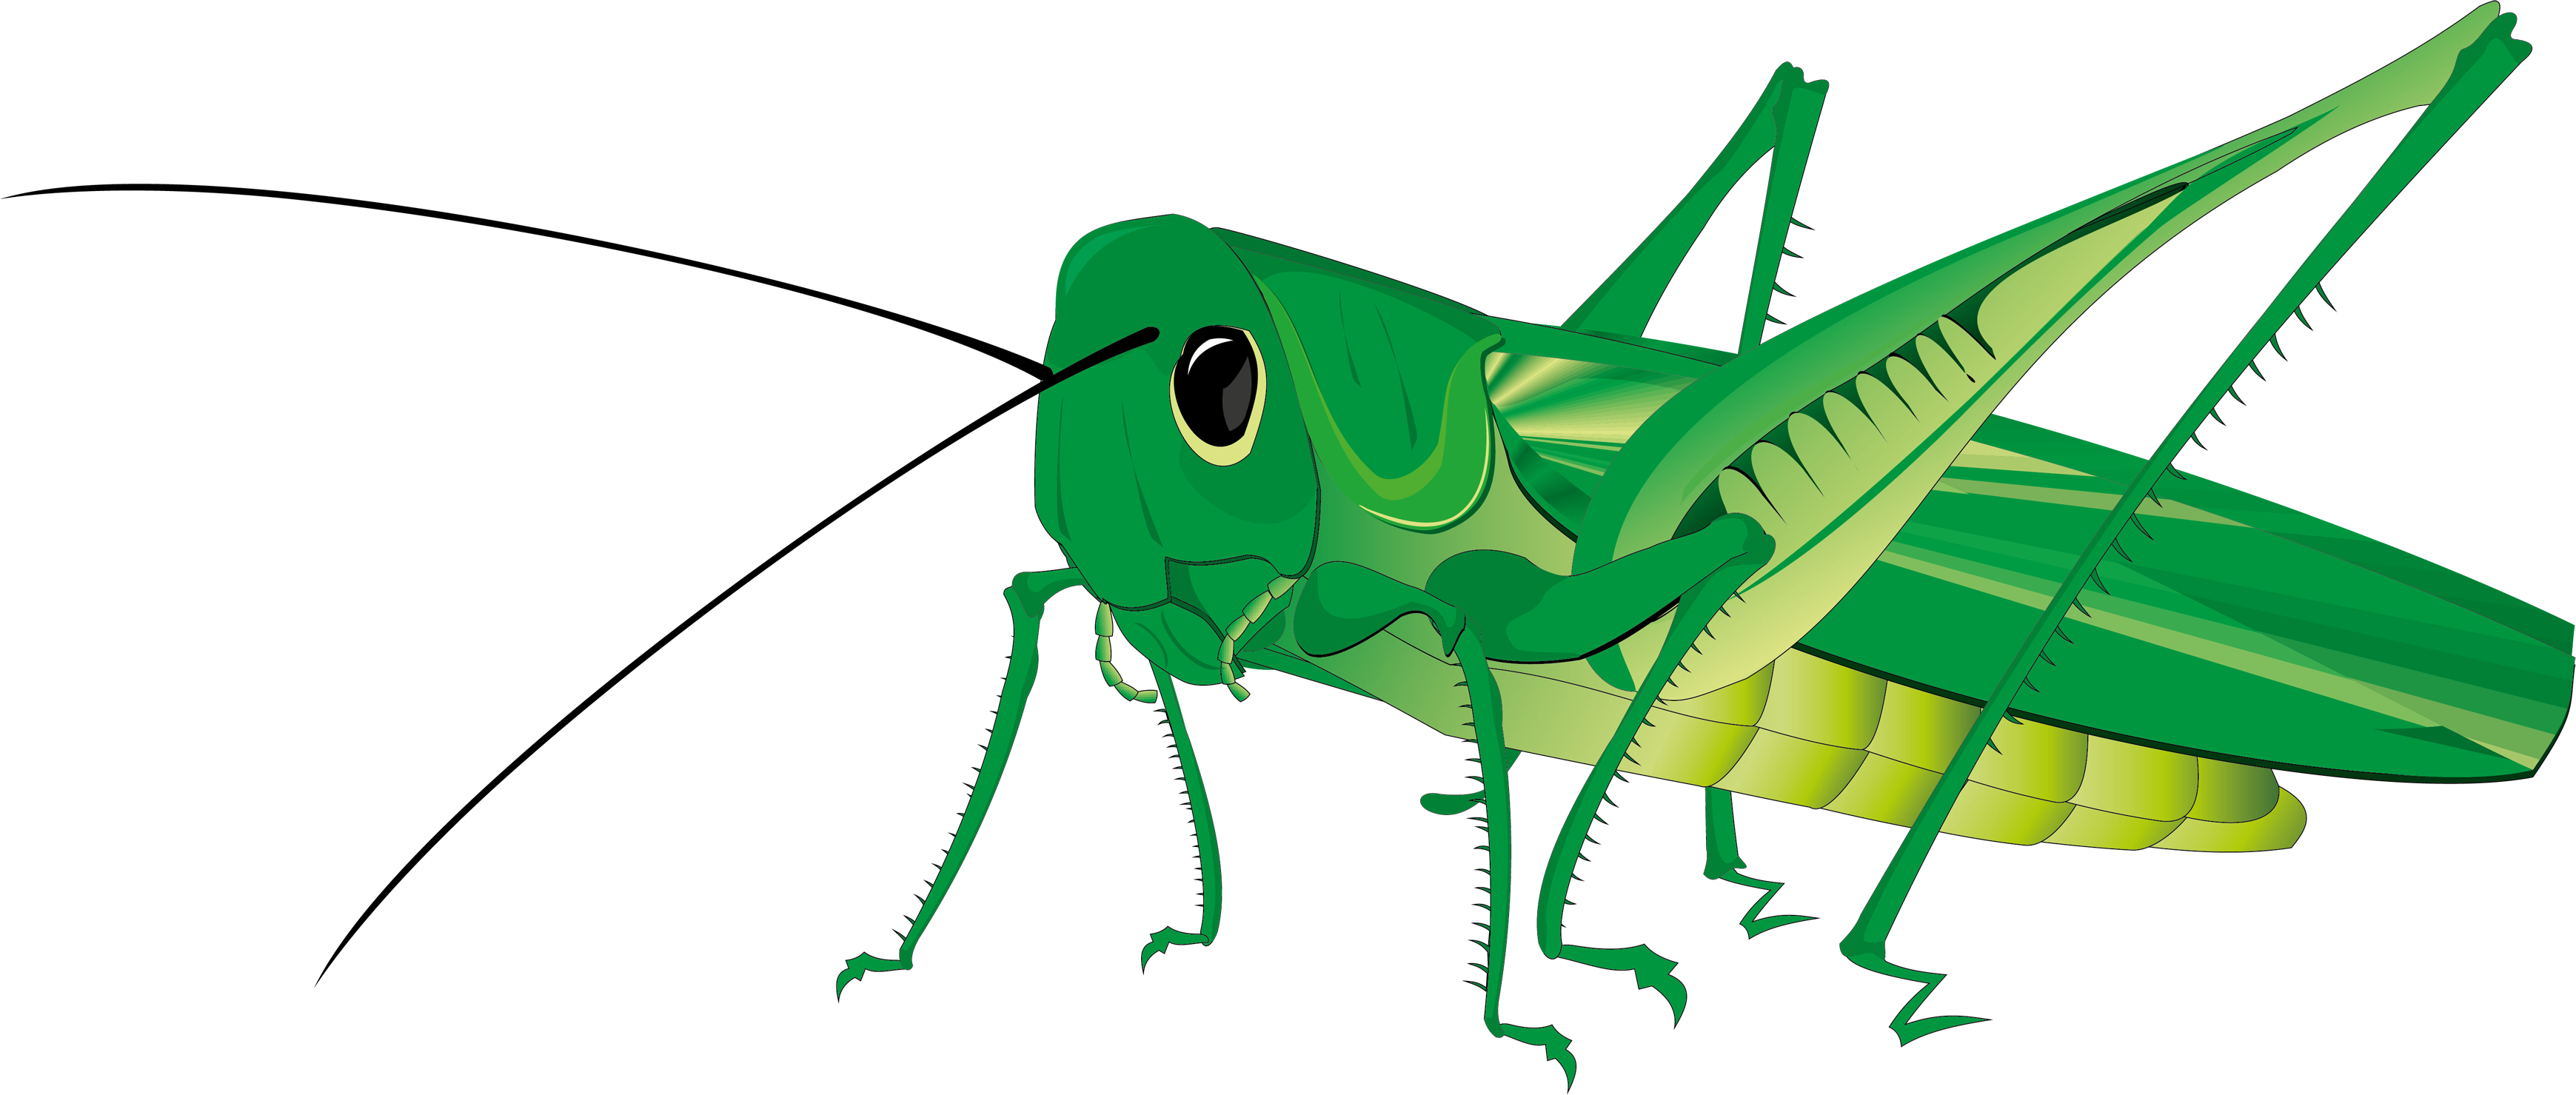 Grasshopper PNG Image